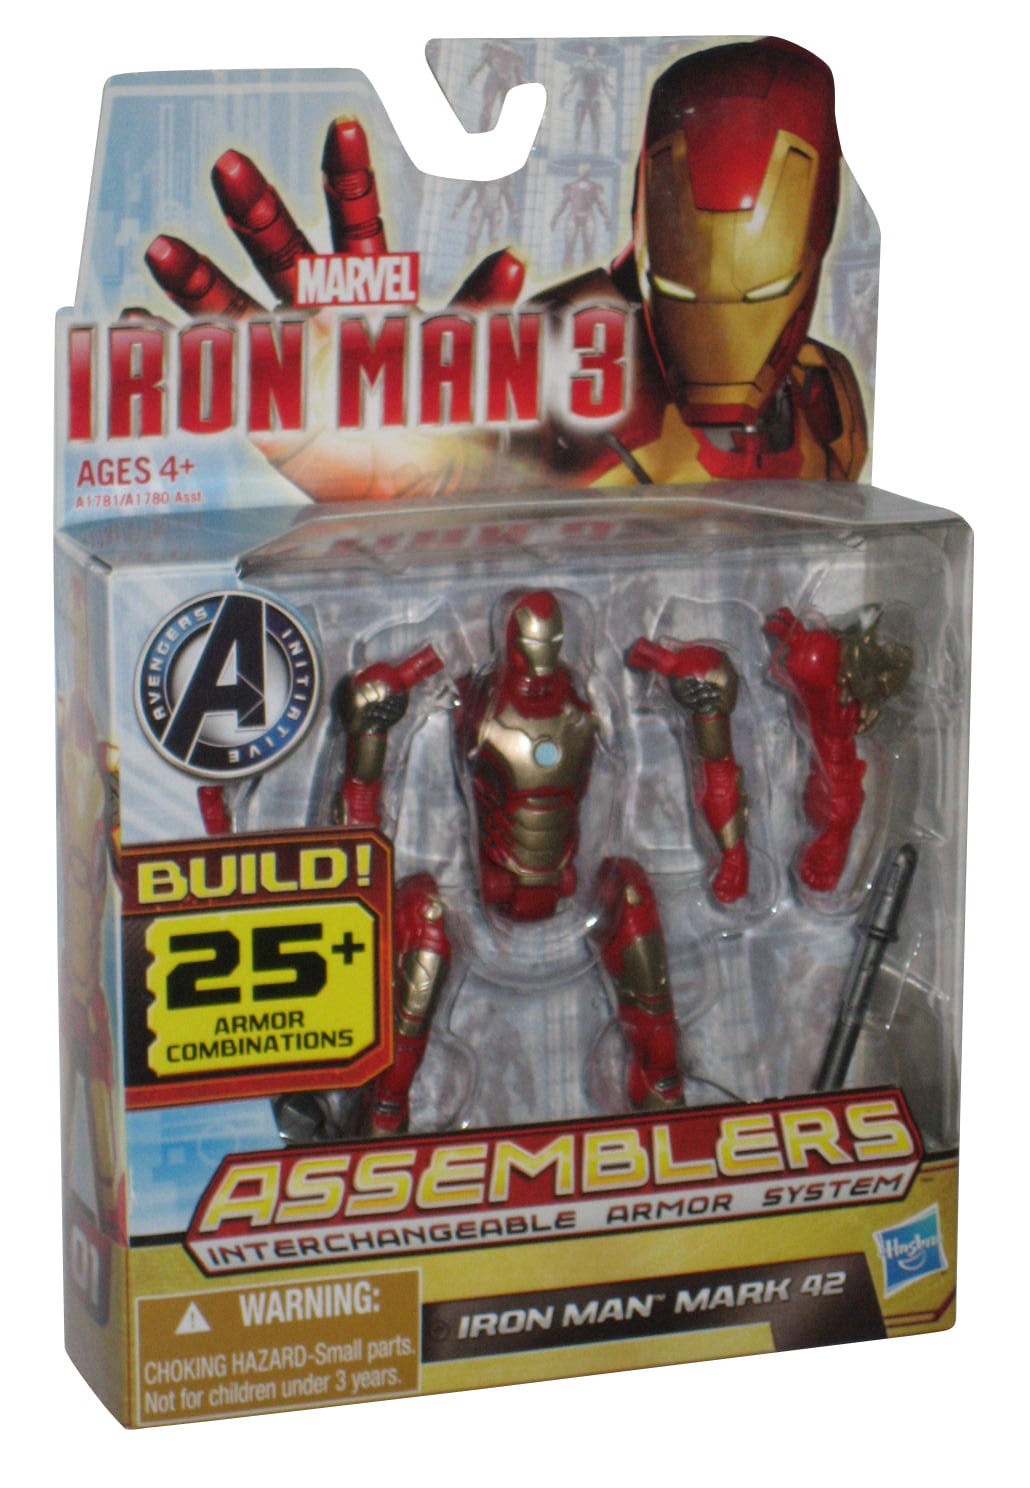 Marvel Iron Man 3 Assemblers Iron Man Mark 42 Action Figure Hasbro